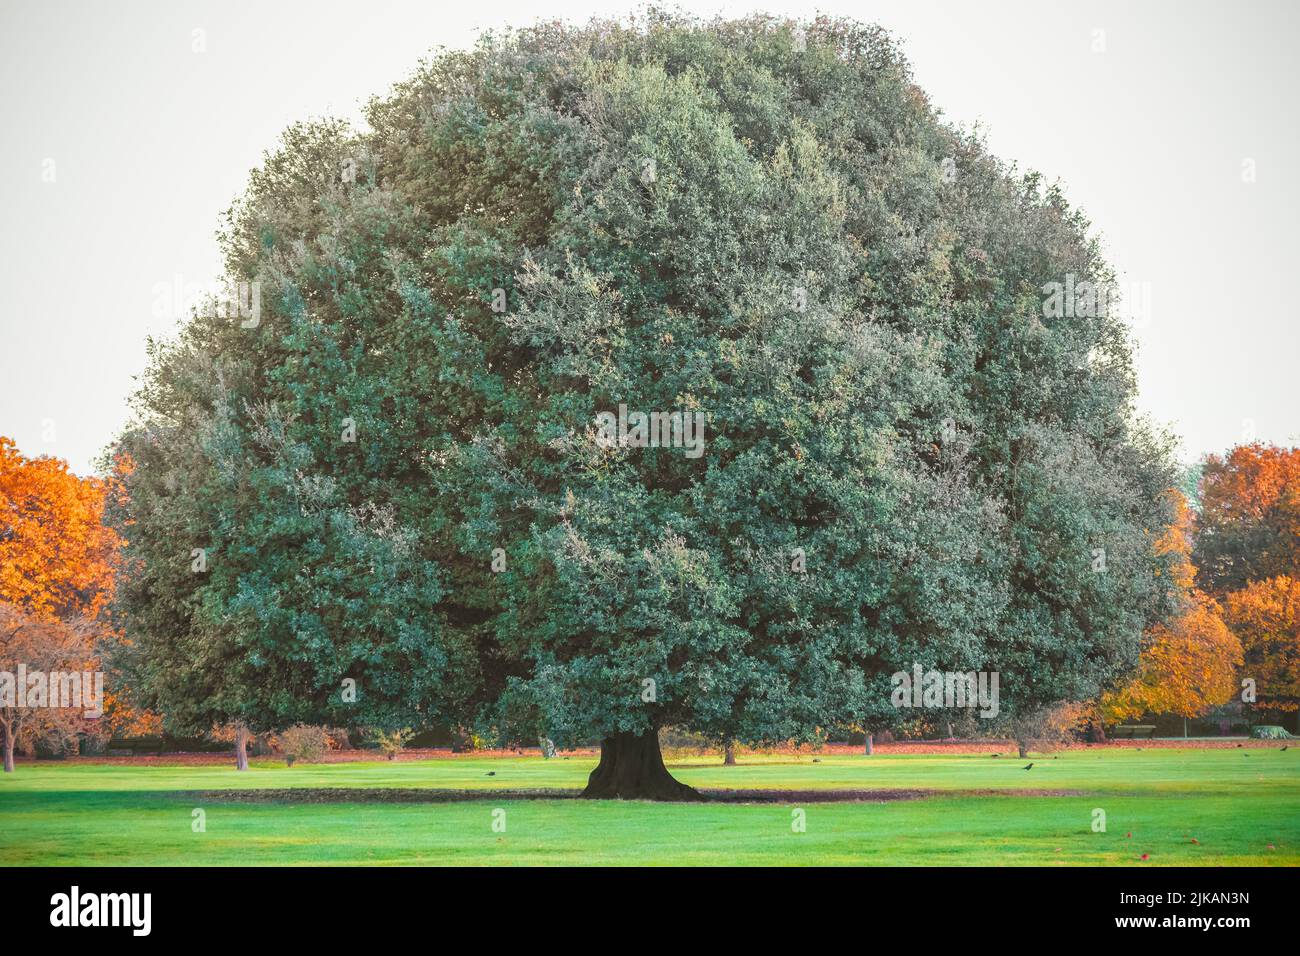 Big oak tree in Greenwich park, London Stock Photo